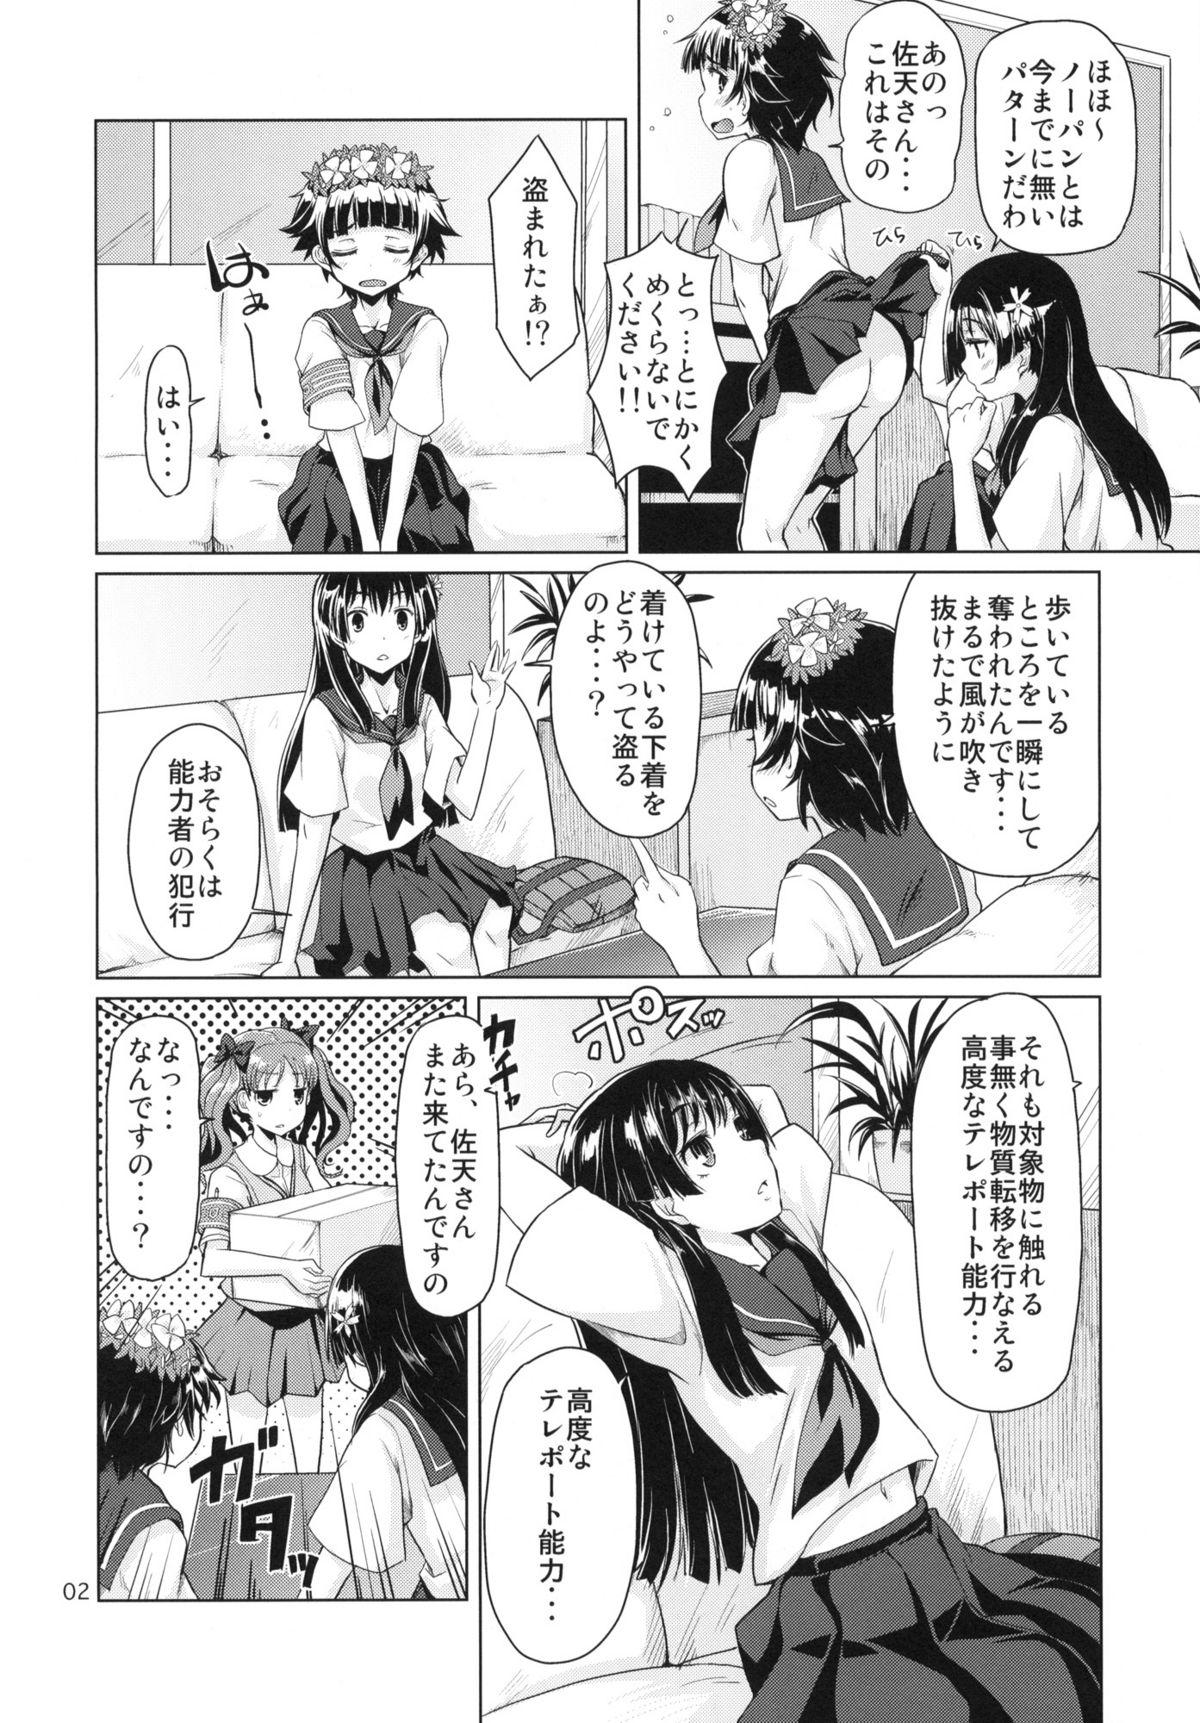 Sologirl i.Saten - Toaru kagaku no railgun Transexual - Page 3